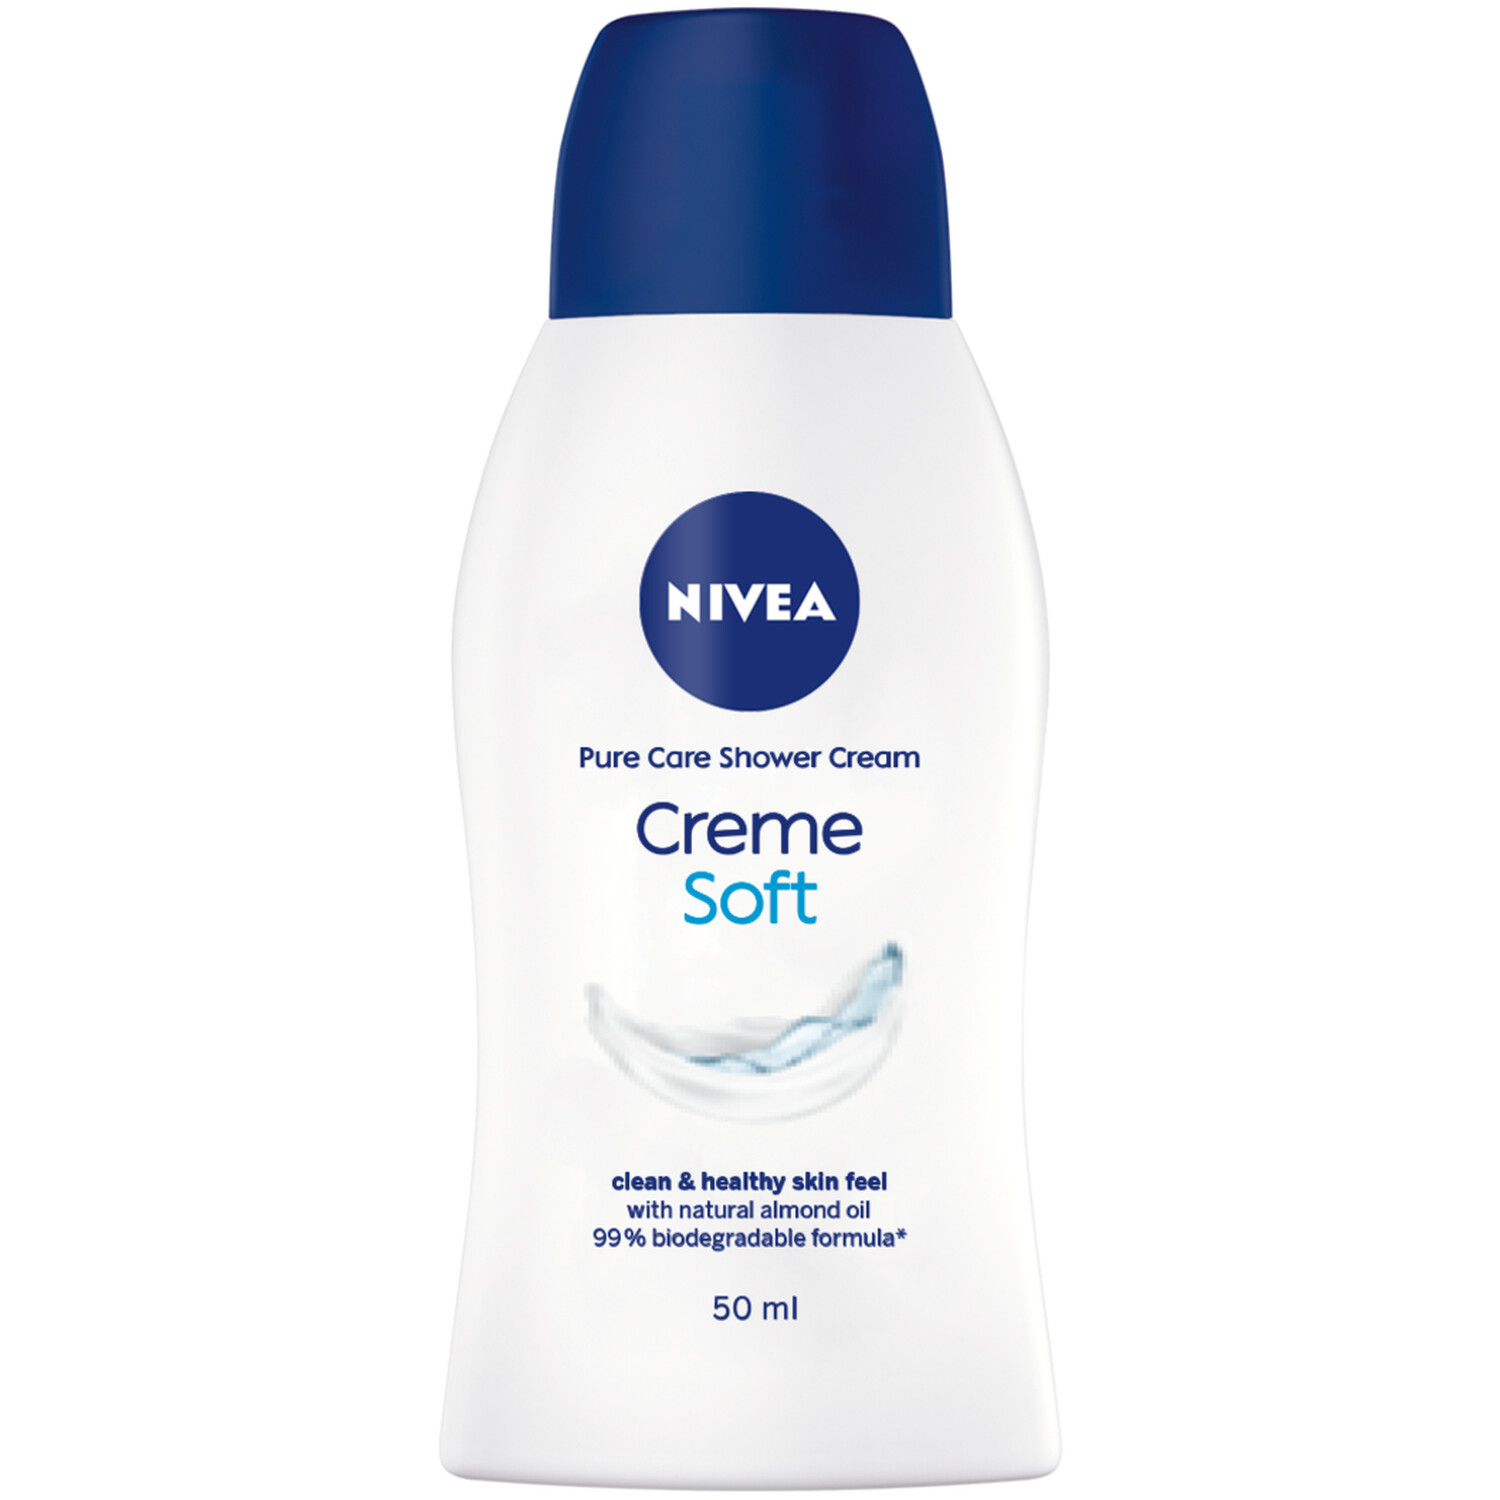 Nivea Pure Care Shower Cream 50ml - White Image